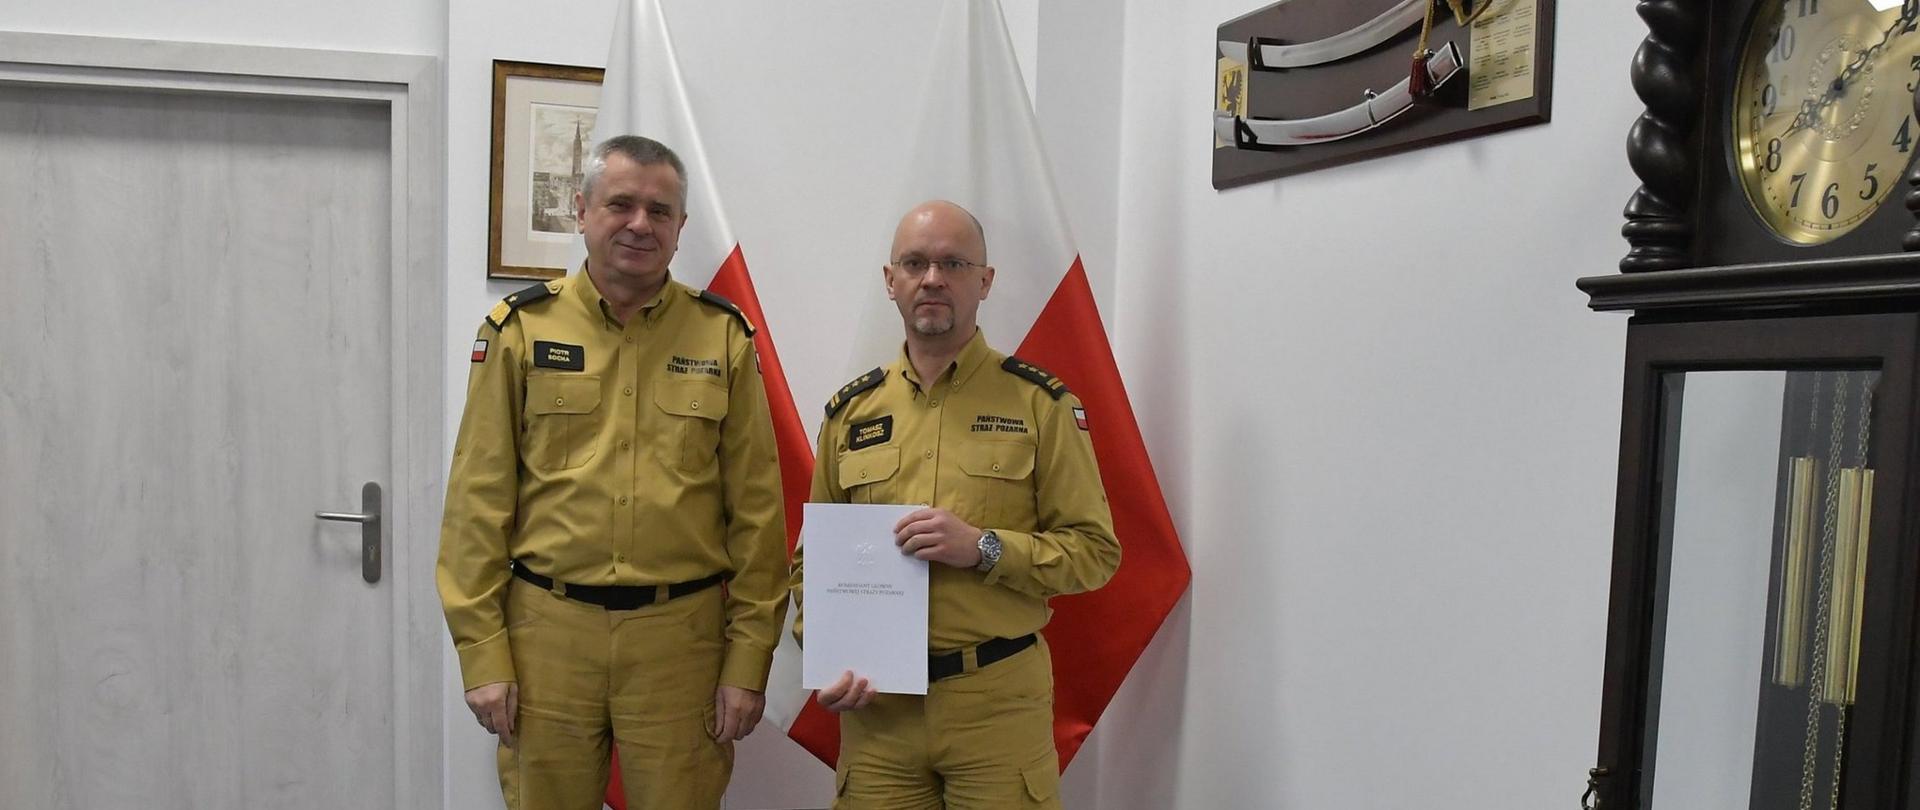 Dwóch funkcjonariuszy Państwowej Straży Pożarnej w mundurach koloru musztardowego stoi obok siebie strażak w okularach trzyma białą teczkę za mężczyznami stoją dwie flagi Polski na ścianą wiszą obraz oraz szabla obok ustawiony jest zegar.